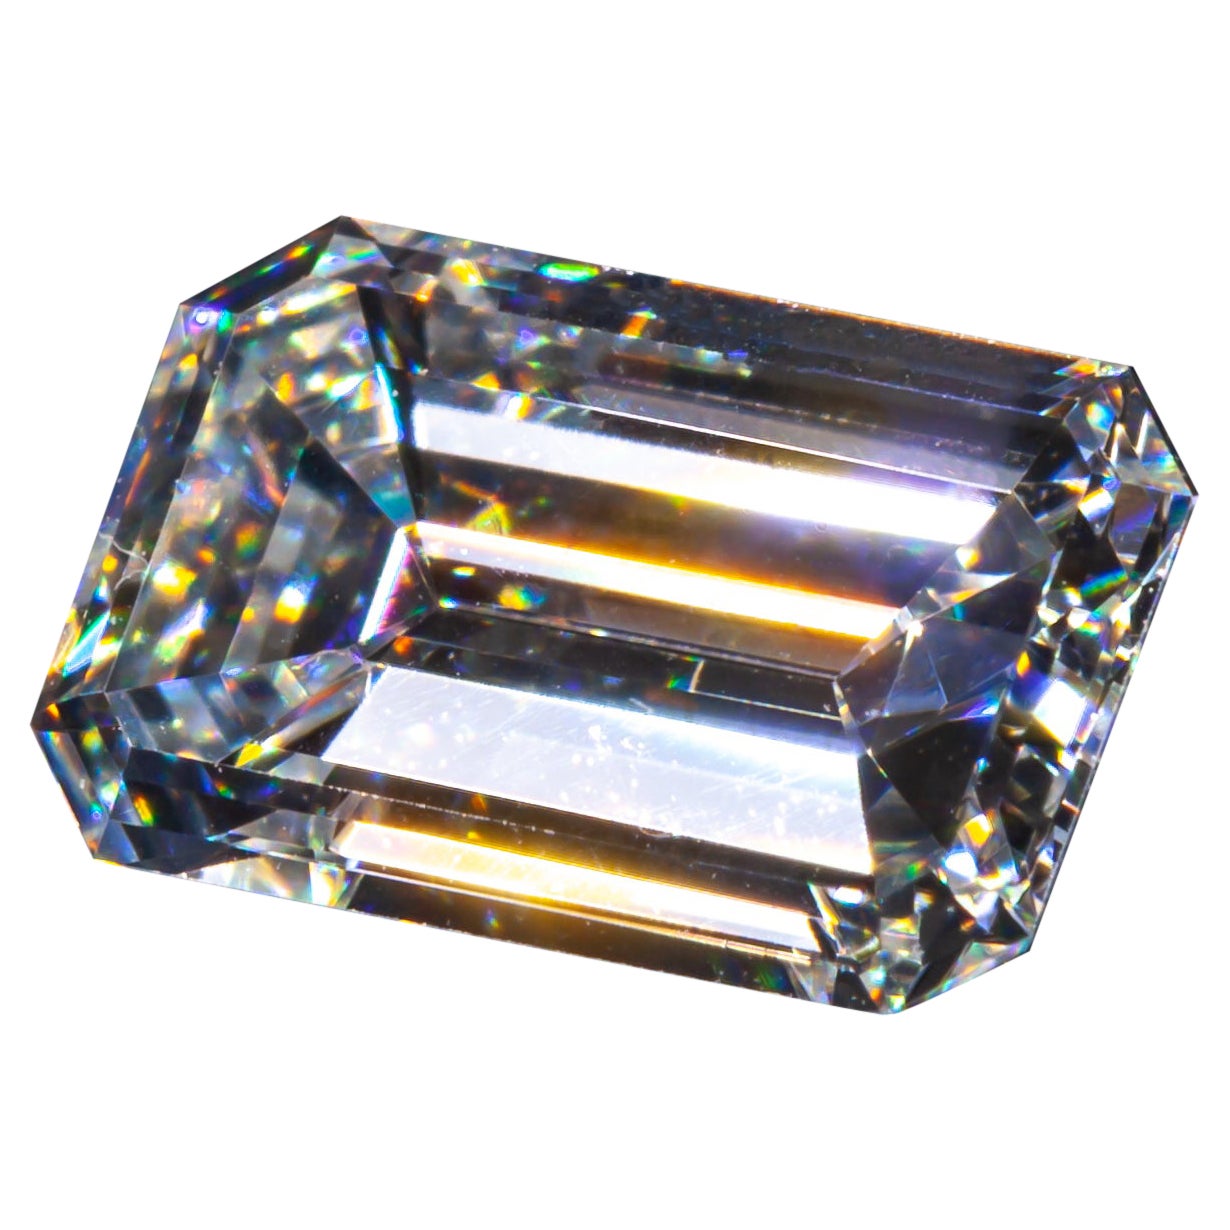 0.87 Carat Loose D / VS1 Emerald Cut Diamond GIA Certified For Sale